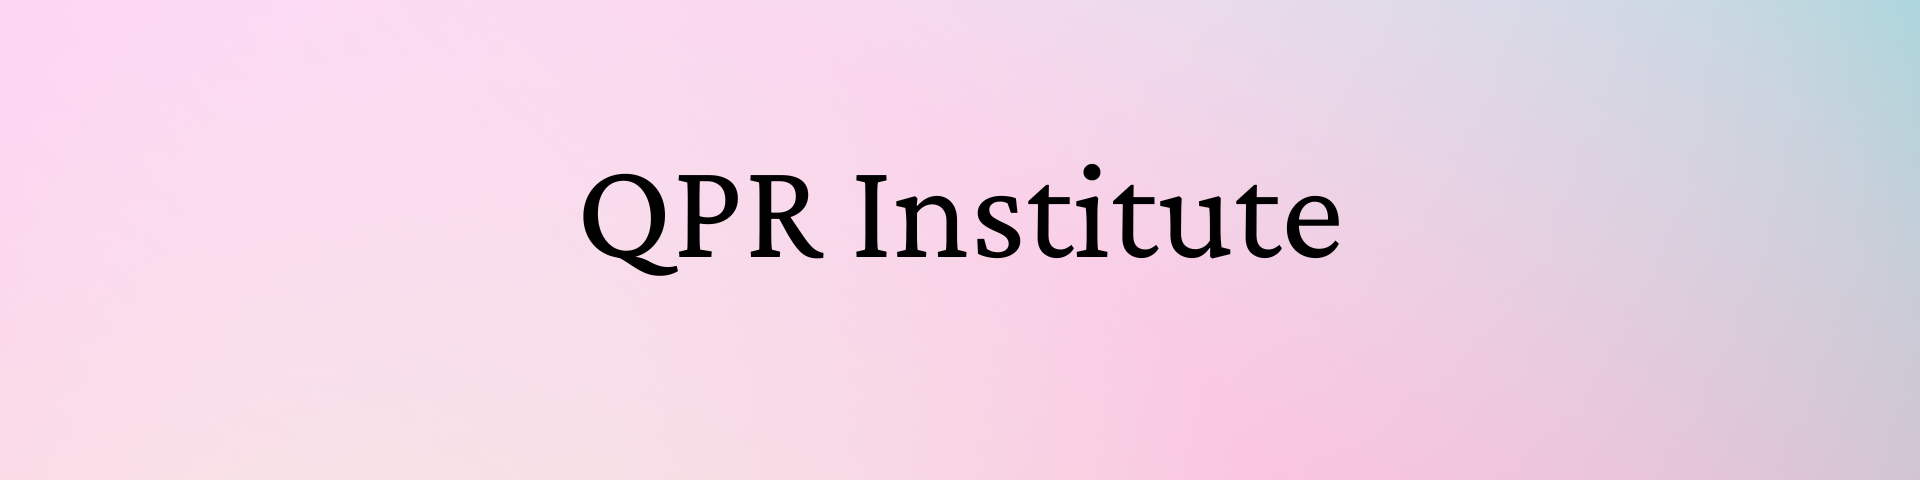 QPR Institute (link)